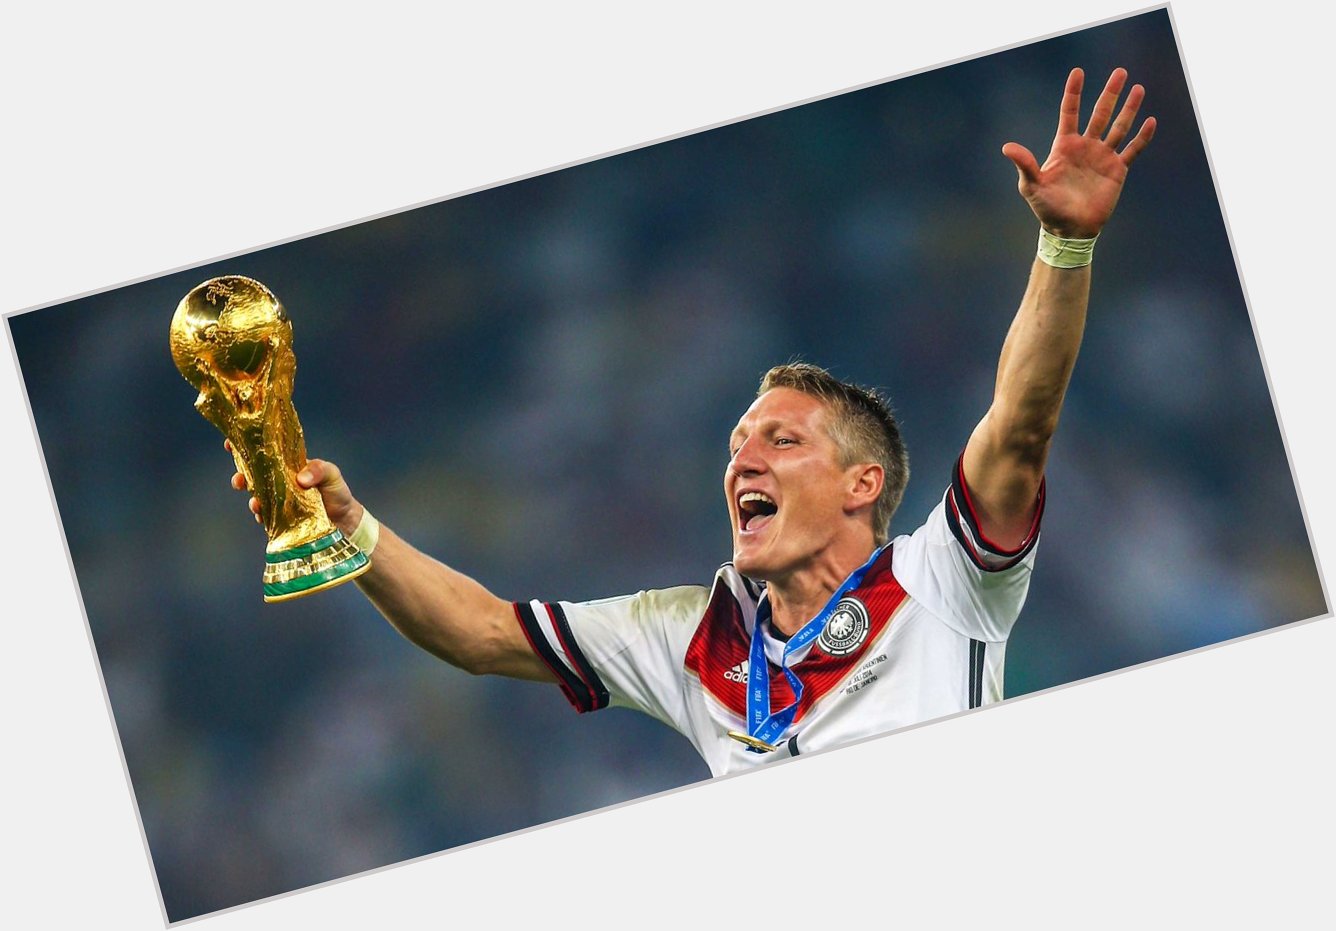 Happy 31st birthday to World Cup winner and Manchester United midfielder Bastian Schweinsteiger! 